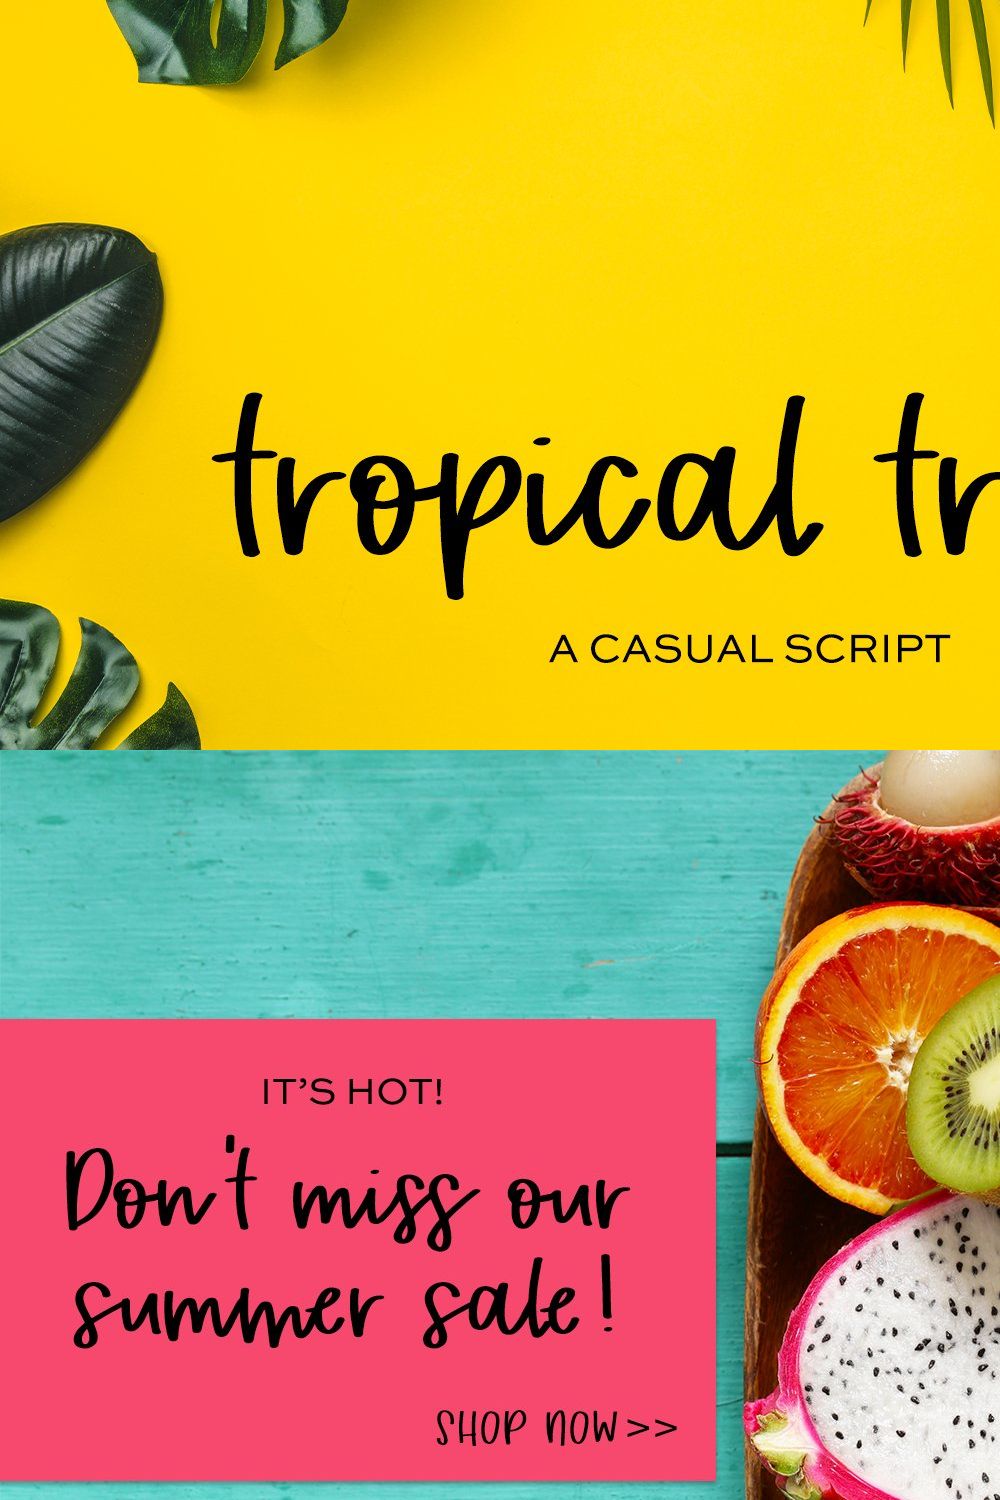 Tropical Trail Script Font pinterest preview image.